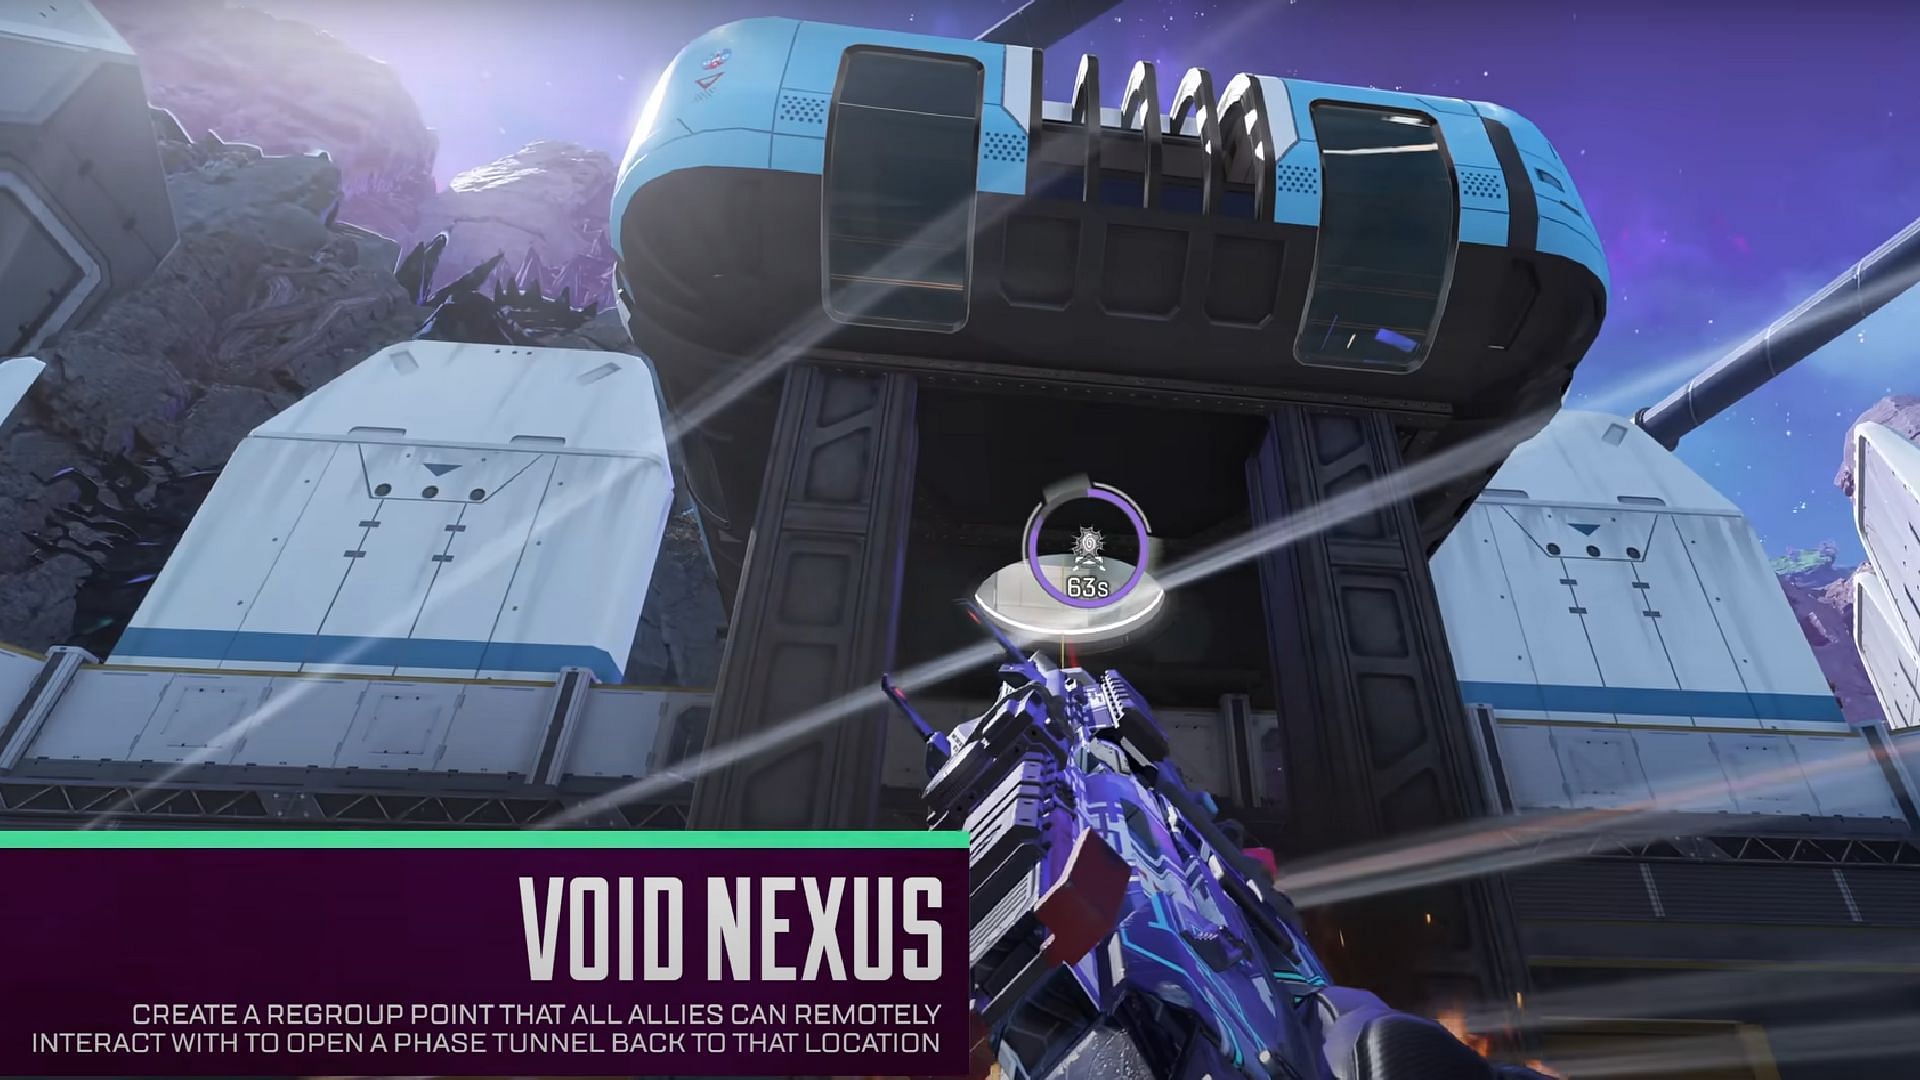 Void Nexus (Image via Electronic Arts)